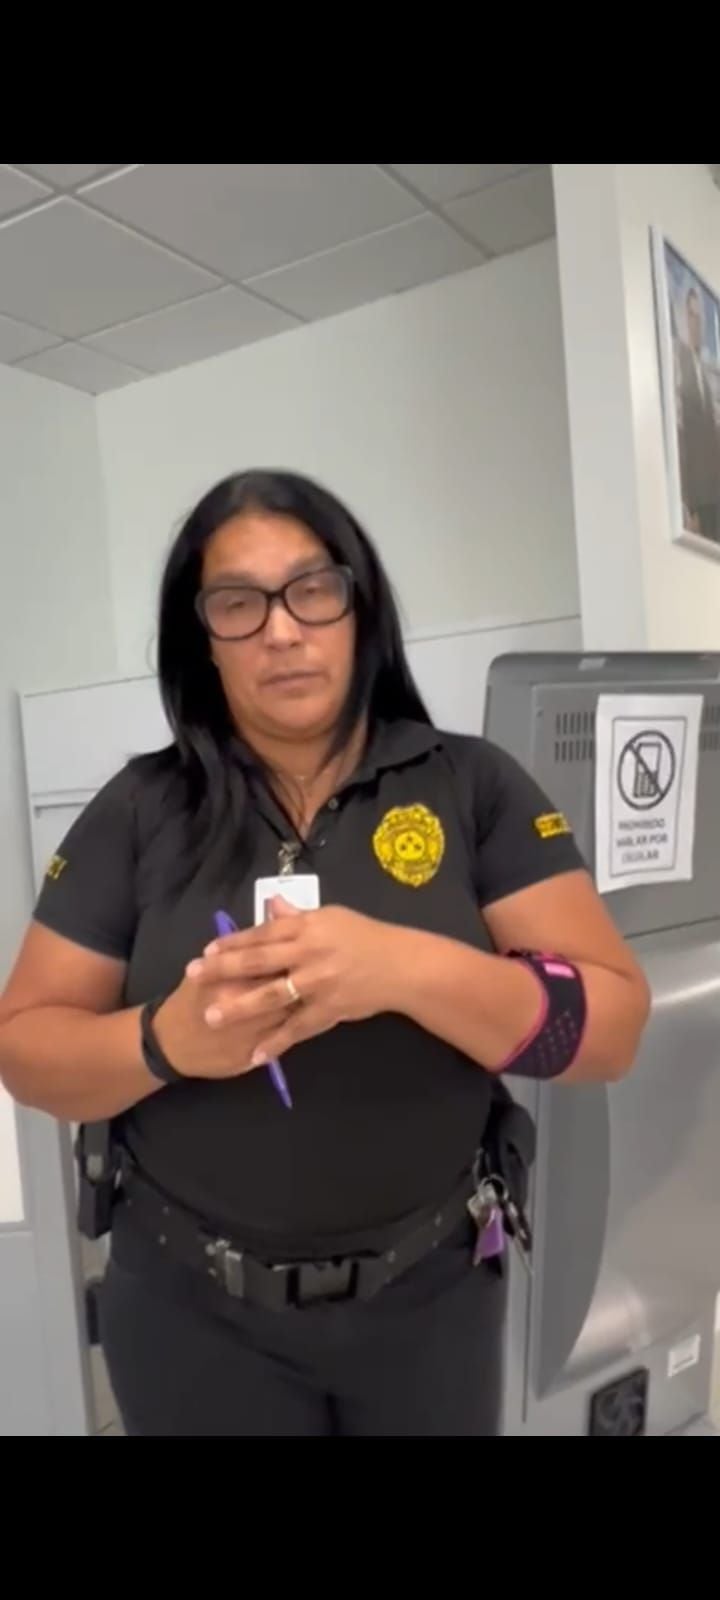 Virginia Olmo, una mujer de origen puertorriqueño, es la vigilante del consulado. Los colombianos se quejan de su mal trato.